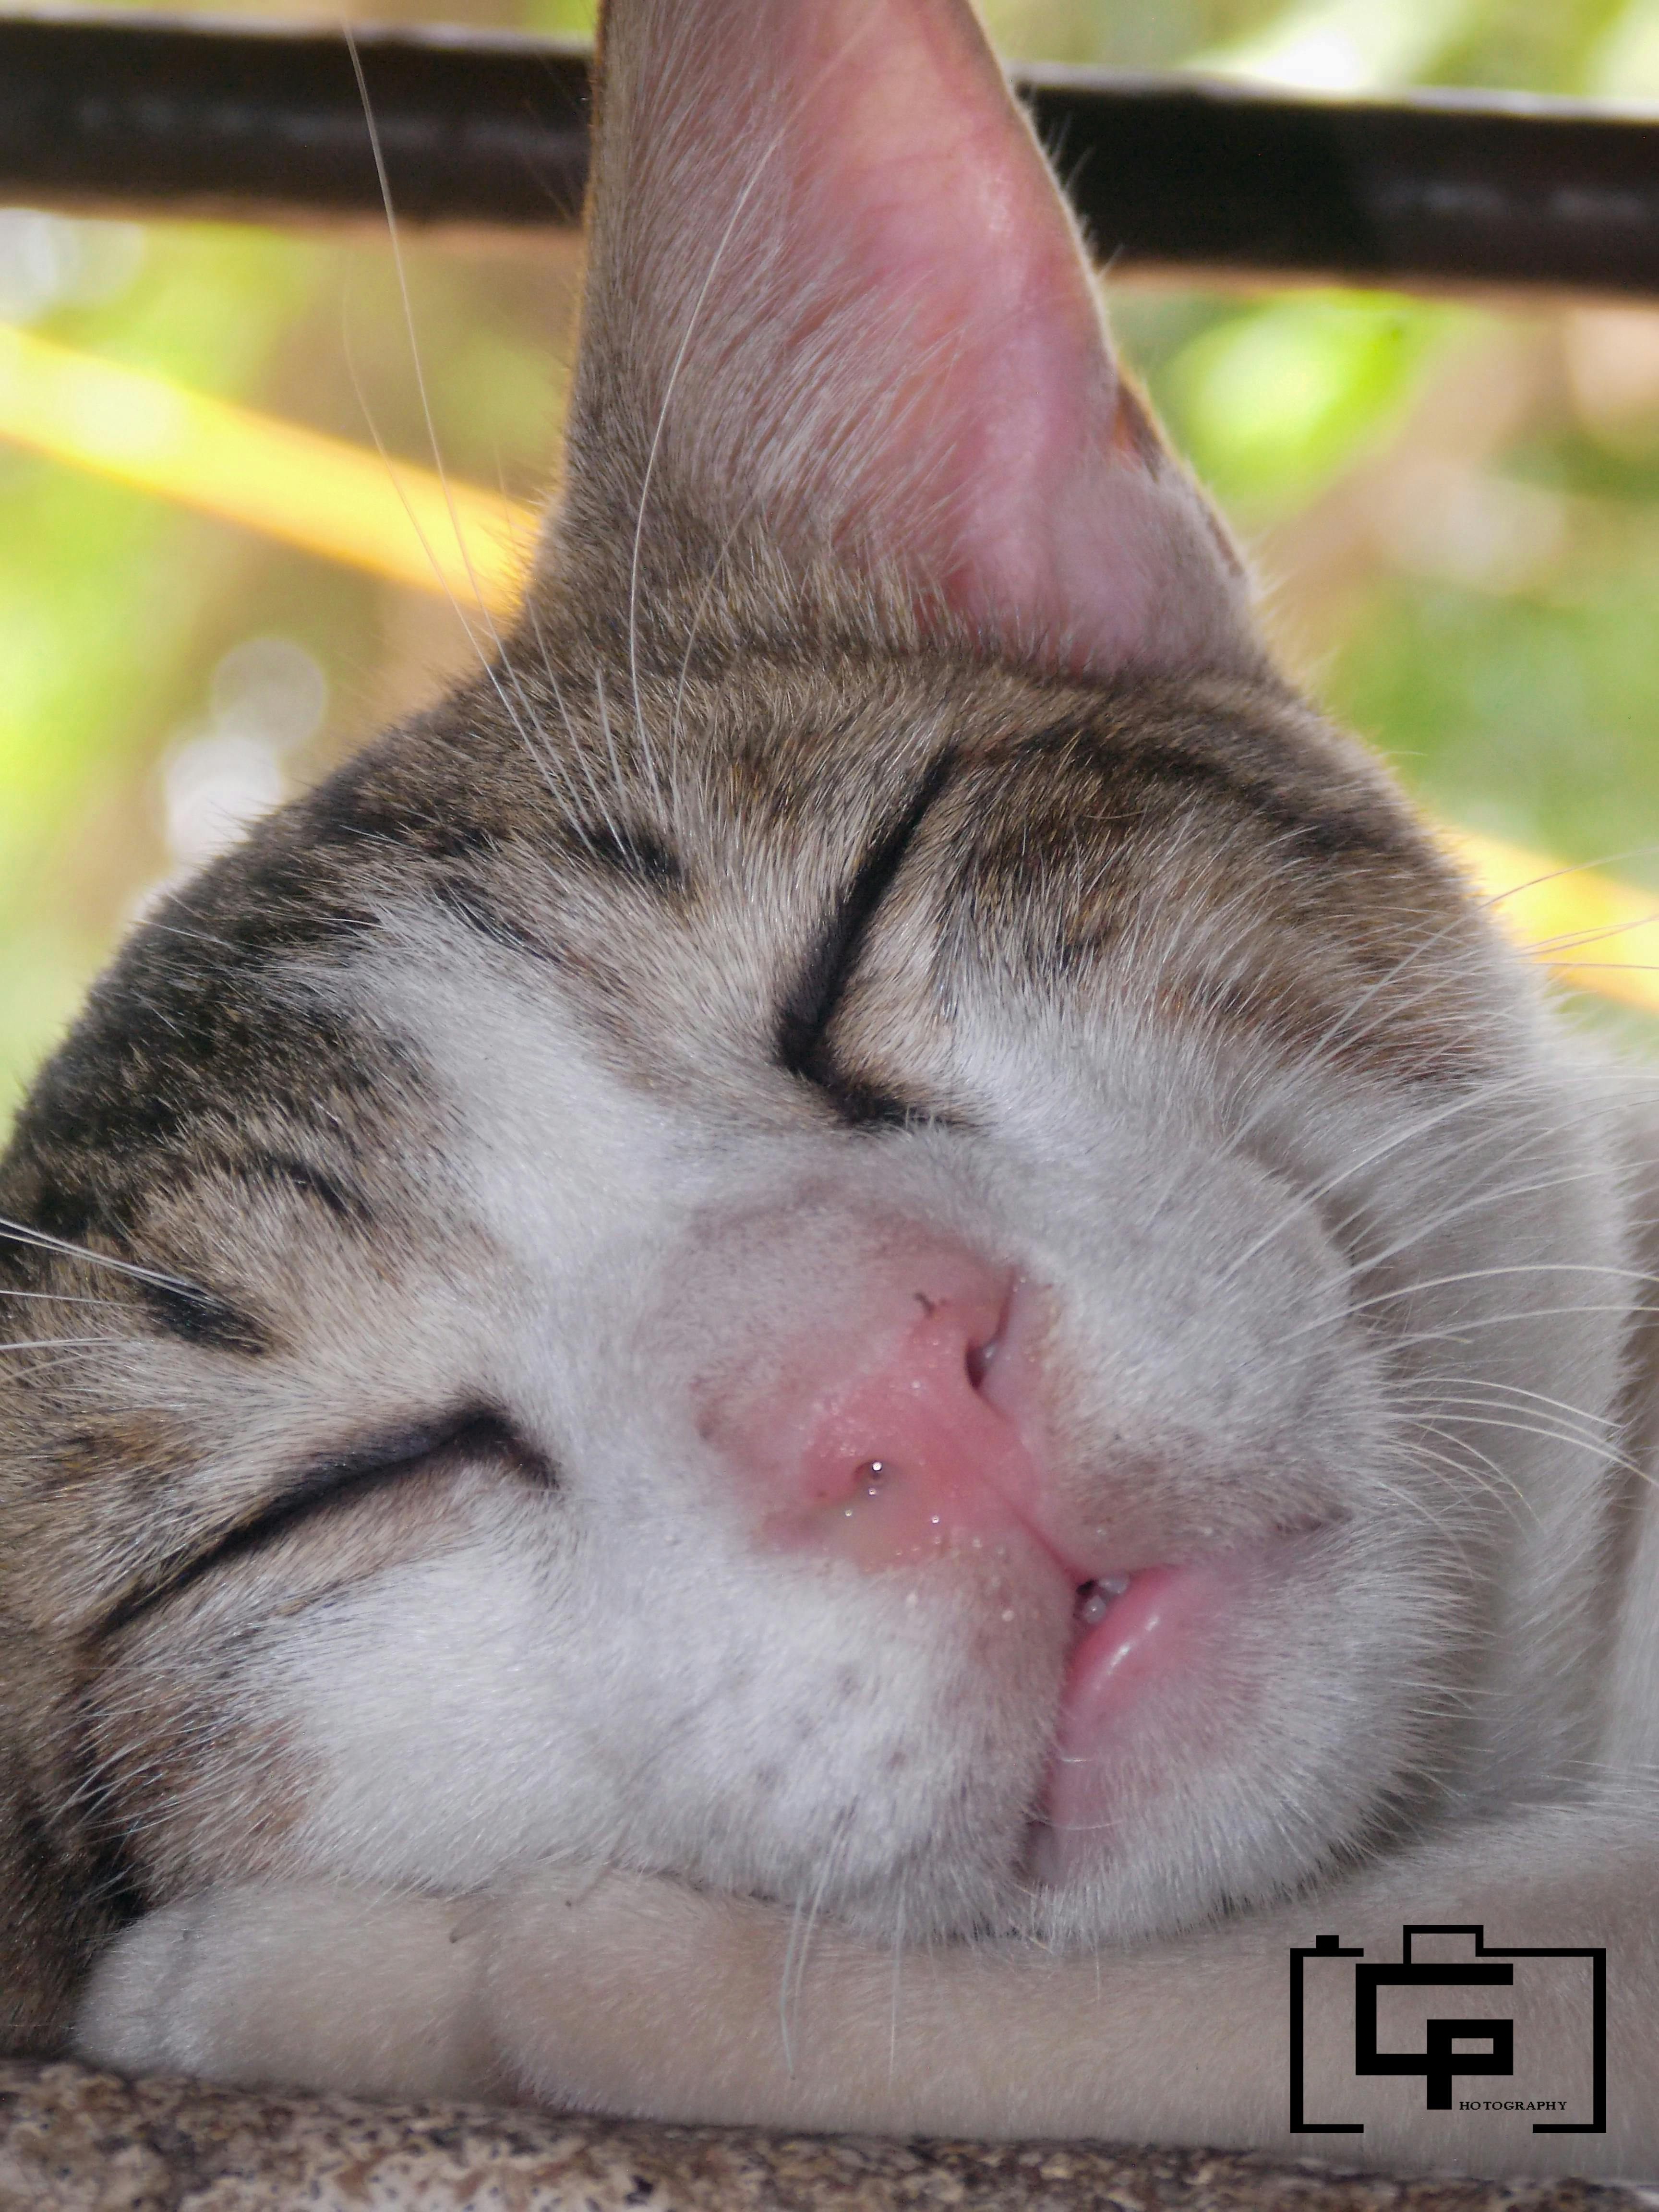 Free stock photo of cat face, cats, sleepy cat